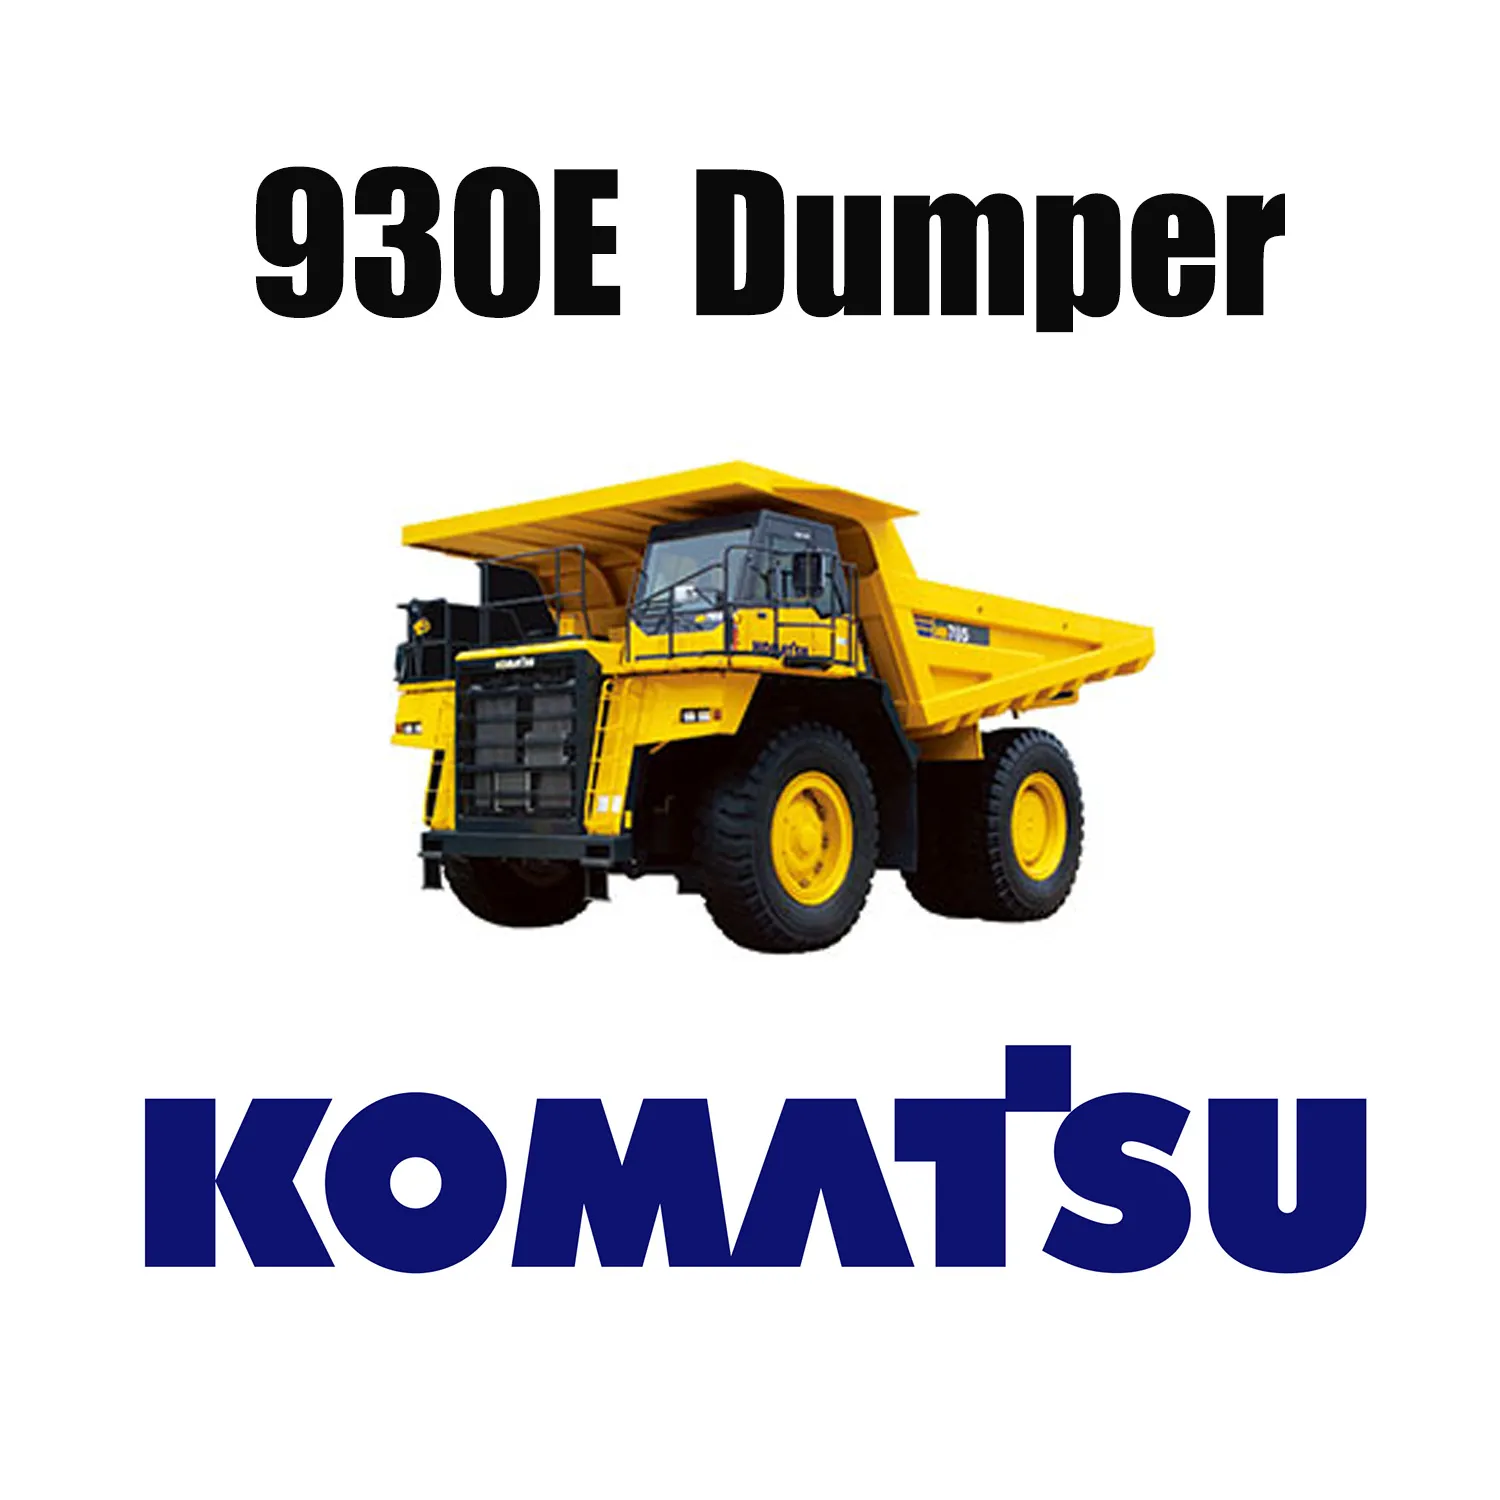 53 / 80R63 Pneus d'exploitation minière hors route appliqués pour KOMATSU 930E